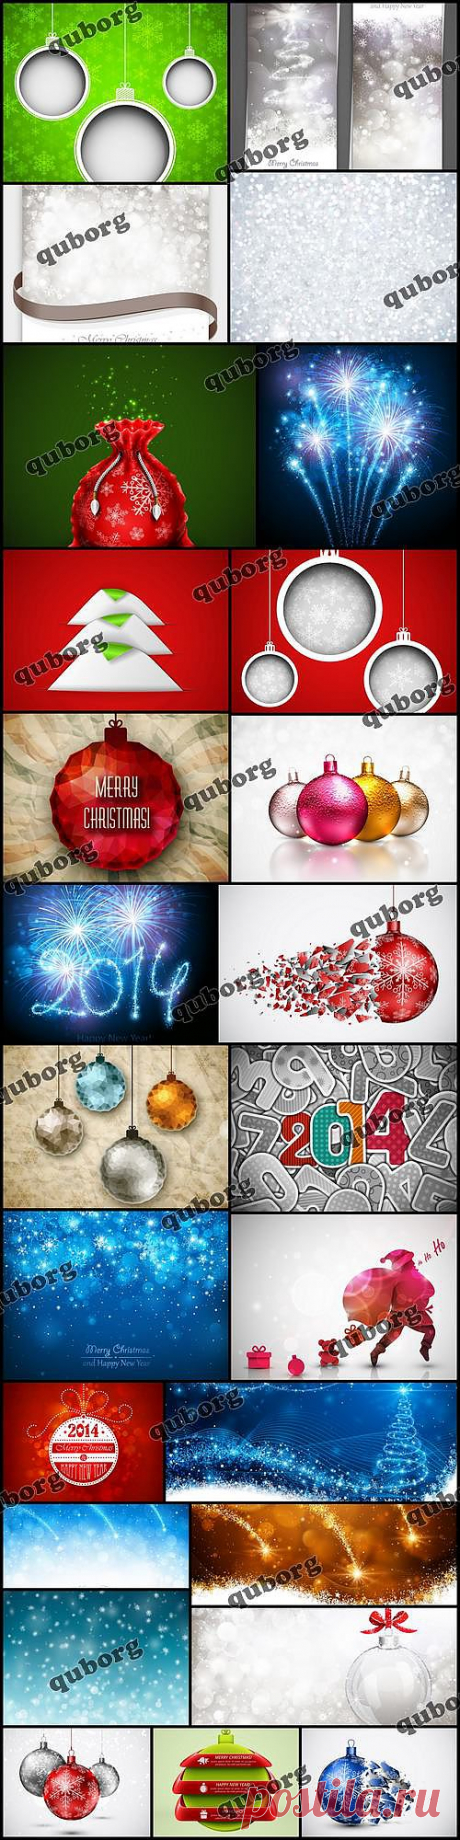 Stock Vector - New Year backgrounds » RandL.ru - Все о графике, photoshop и дизайне. Скачать бесплатно photoshop, фото, картинки, обои, рисунки, иконки, клипарты, шаблоны.